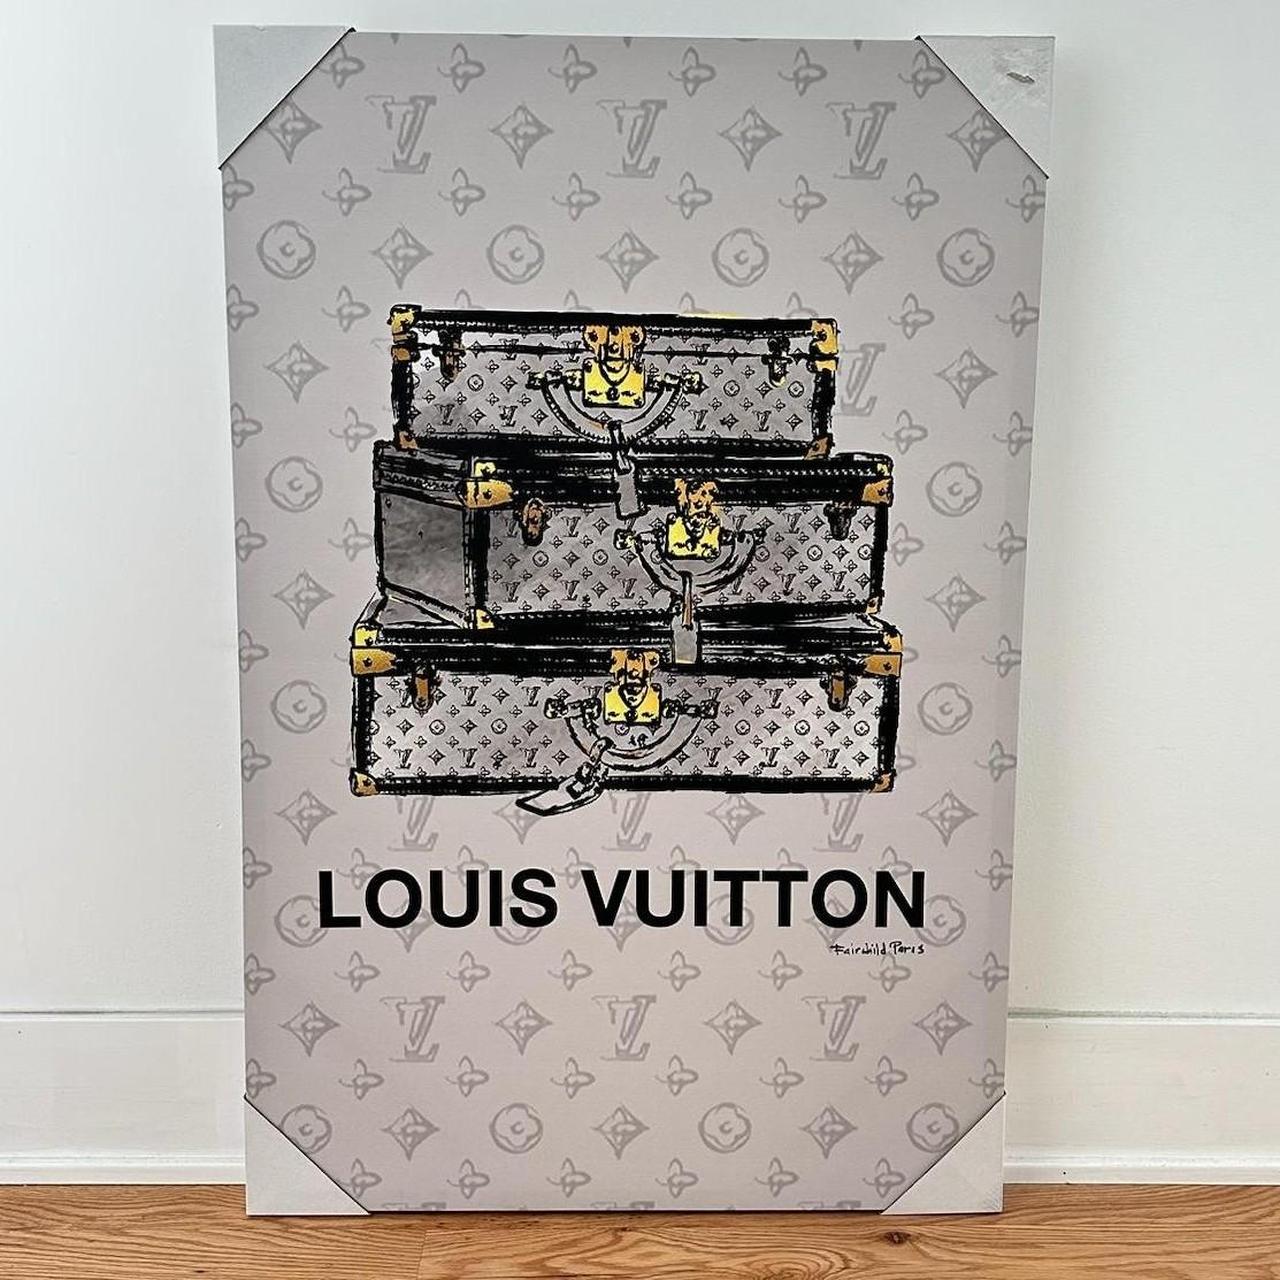 LOUIS VUITTON Fairchild Paris Luggage Theme Canvas - Depop